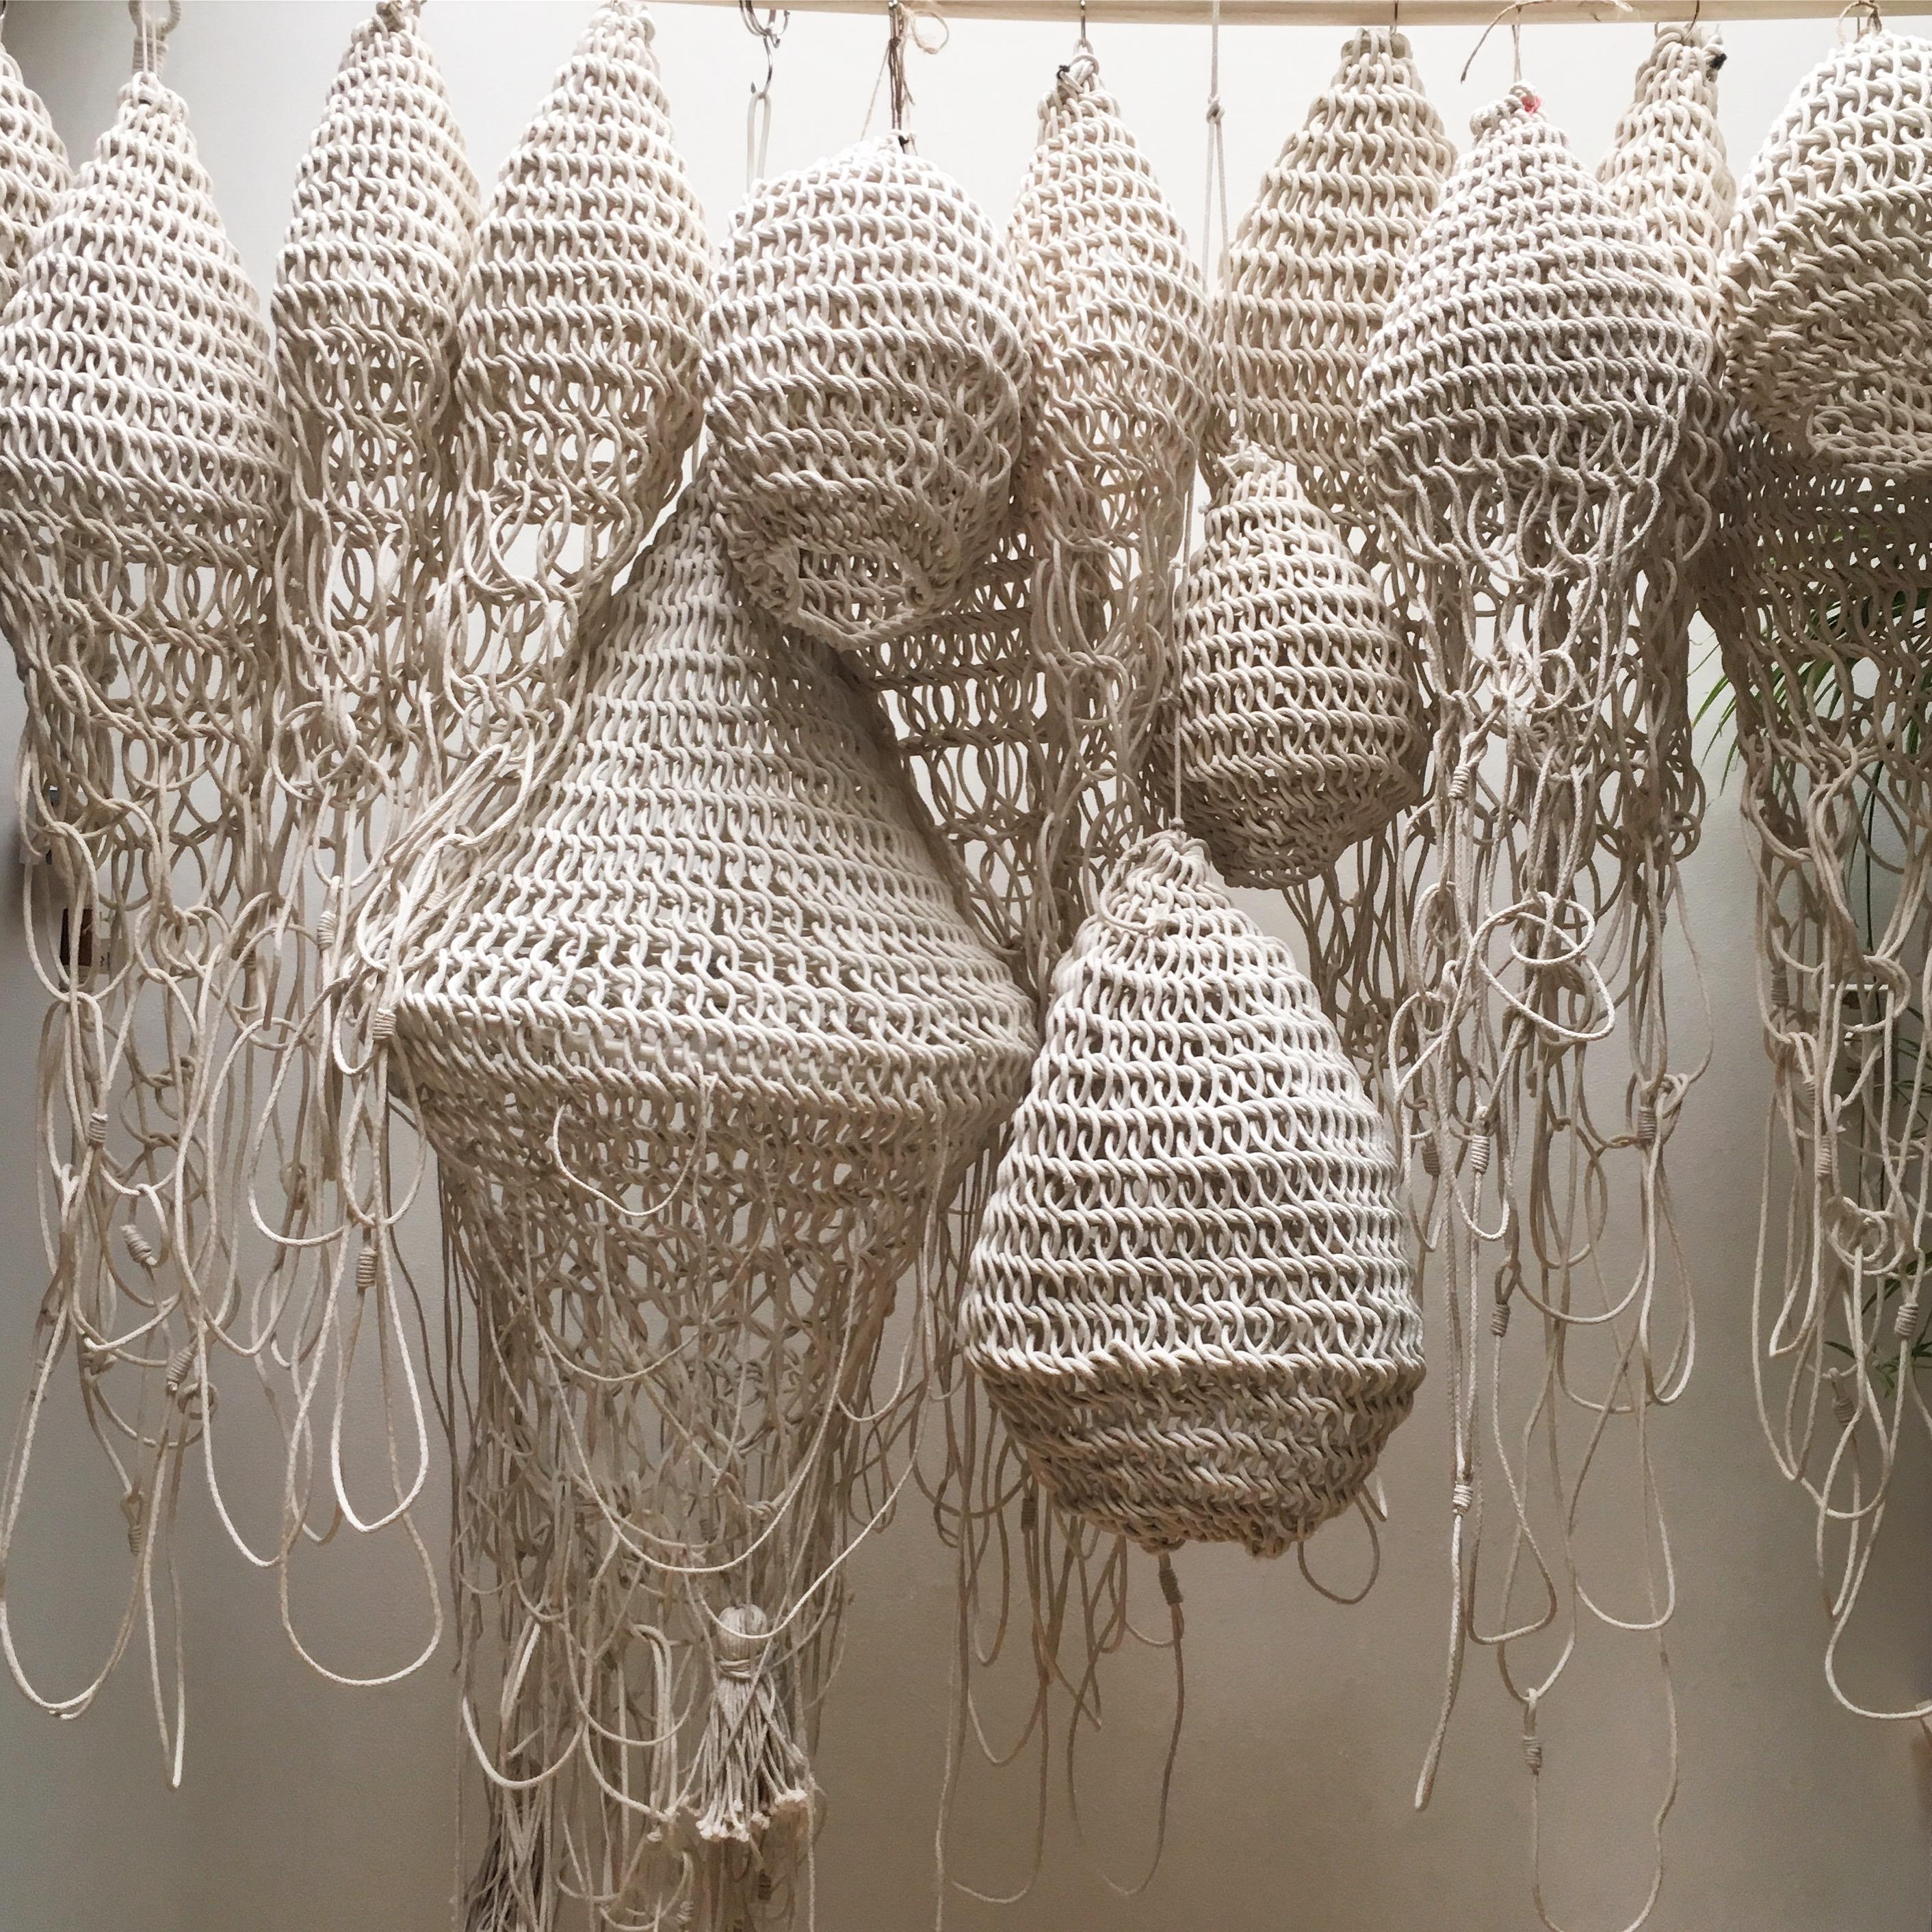 Die Faserkünstlerin Annie Legault ist ein Fan des Slow-Designs und fertigt jedes Textilstück in ihrem Atelier in Old Montreal von Hand an. Als Fiber-Power-Künstlerin, die sich seit 2013 auf handgefertigte Objekte, funktionale Kunstwerke und